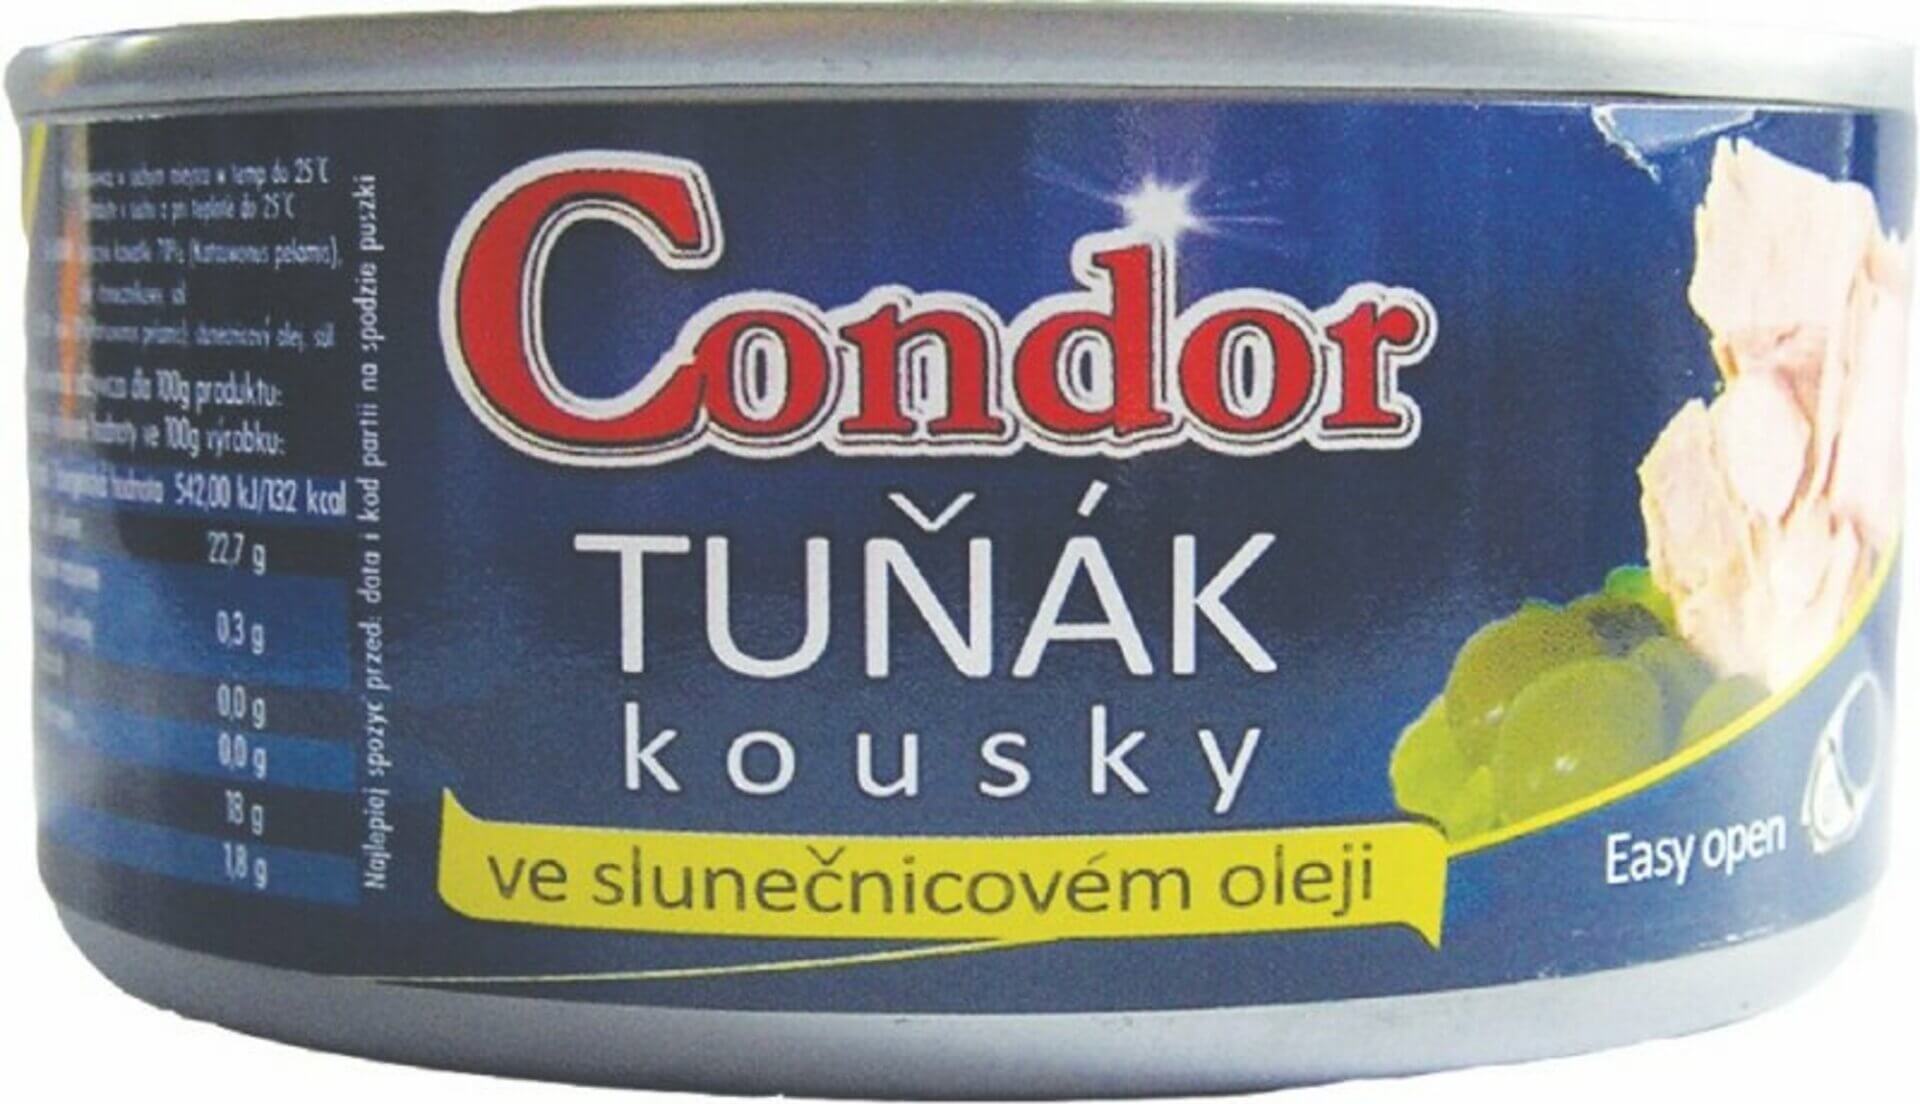 E-shop Condor Tuniak kúsky v slnečnicovom oleji (plechovka) 170 g